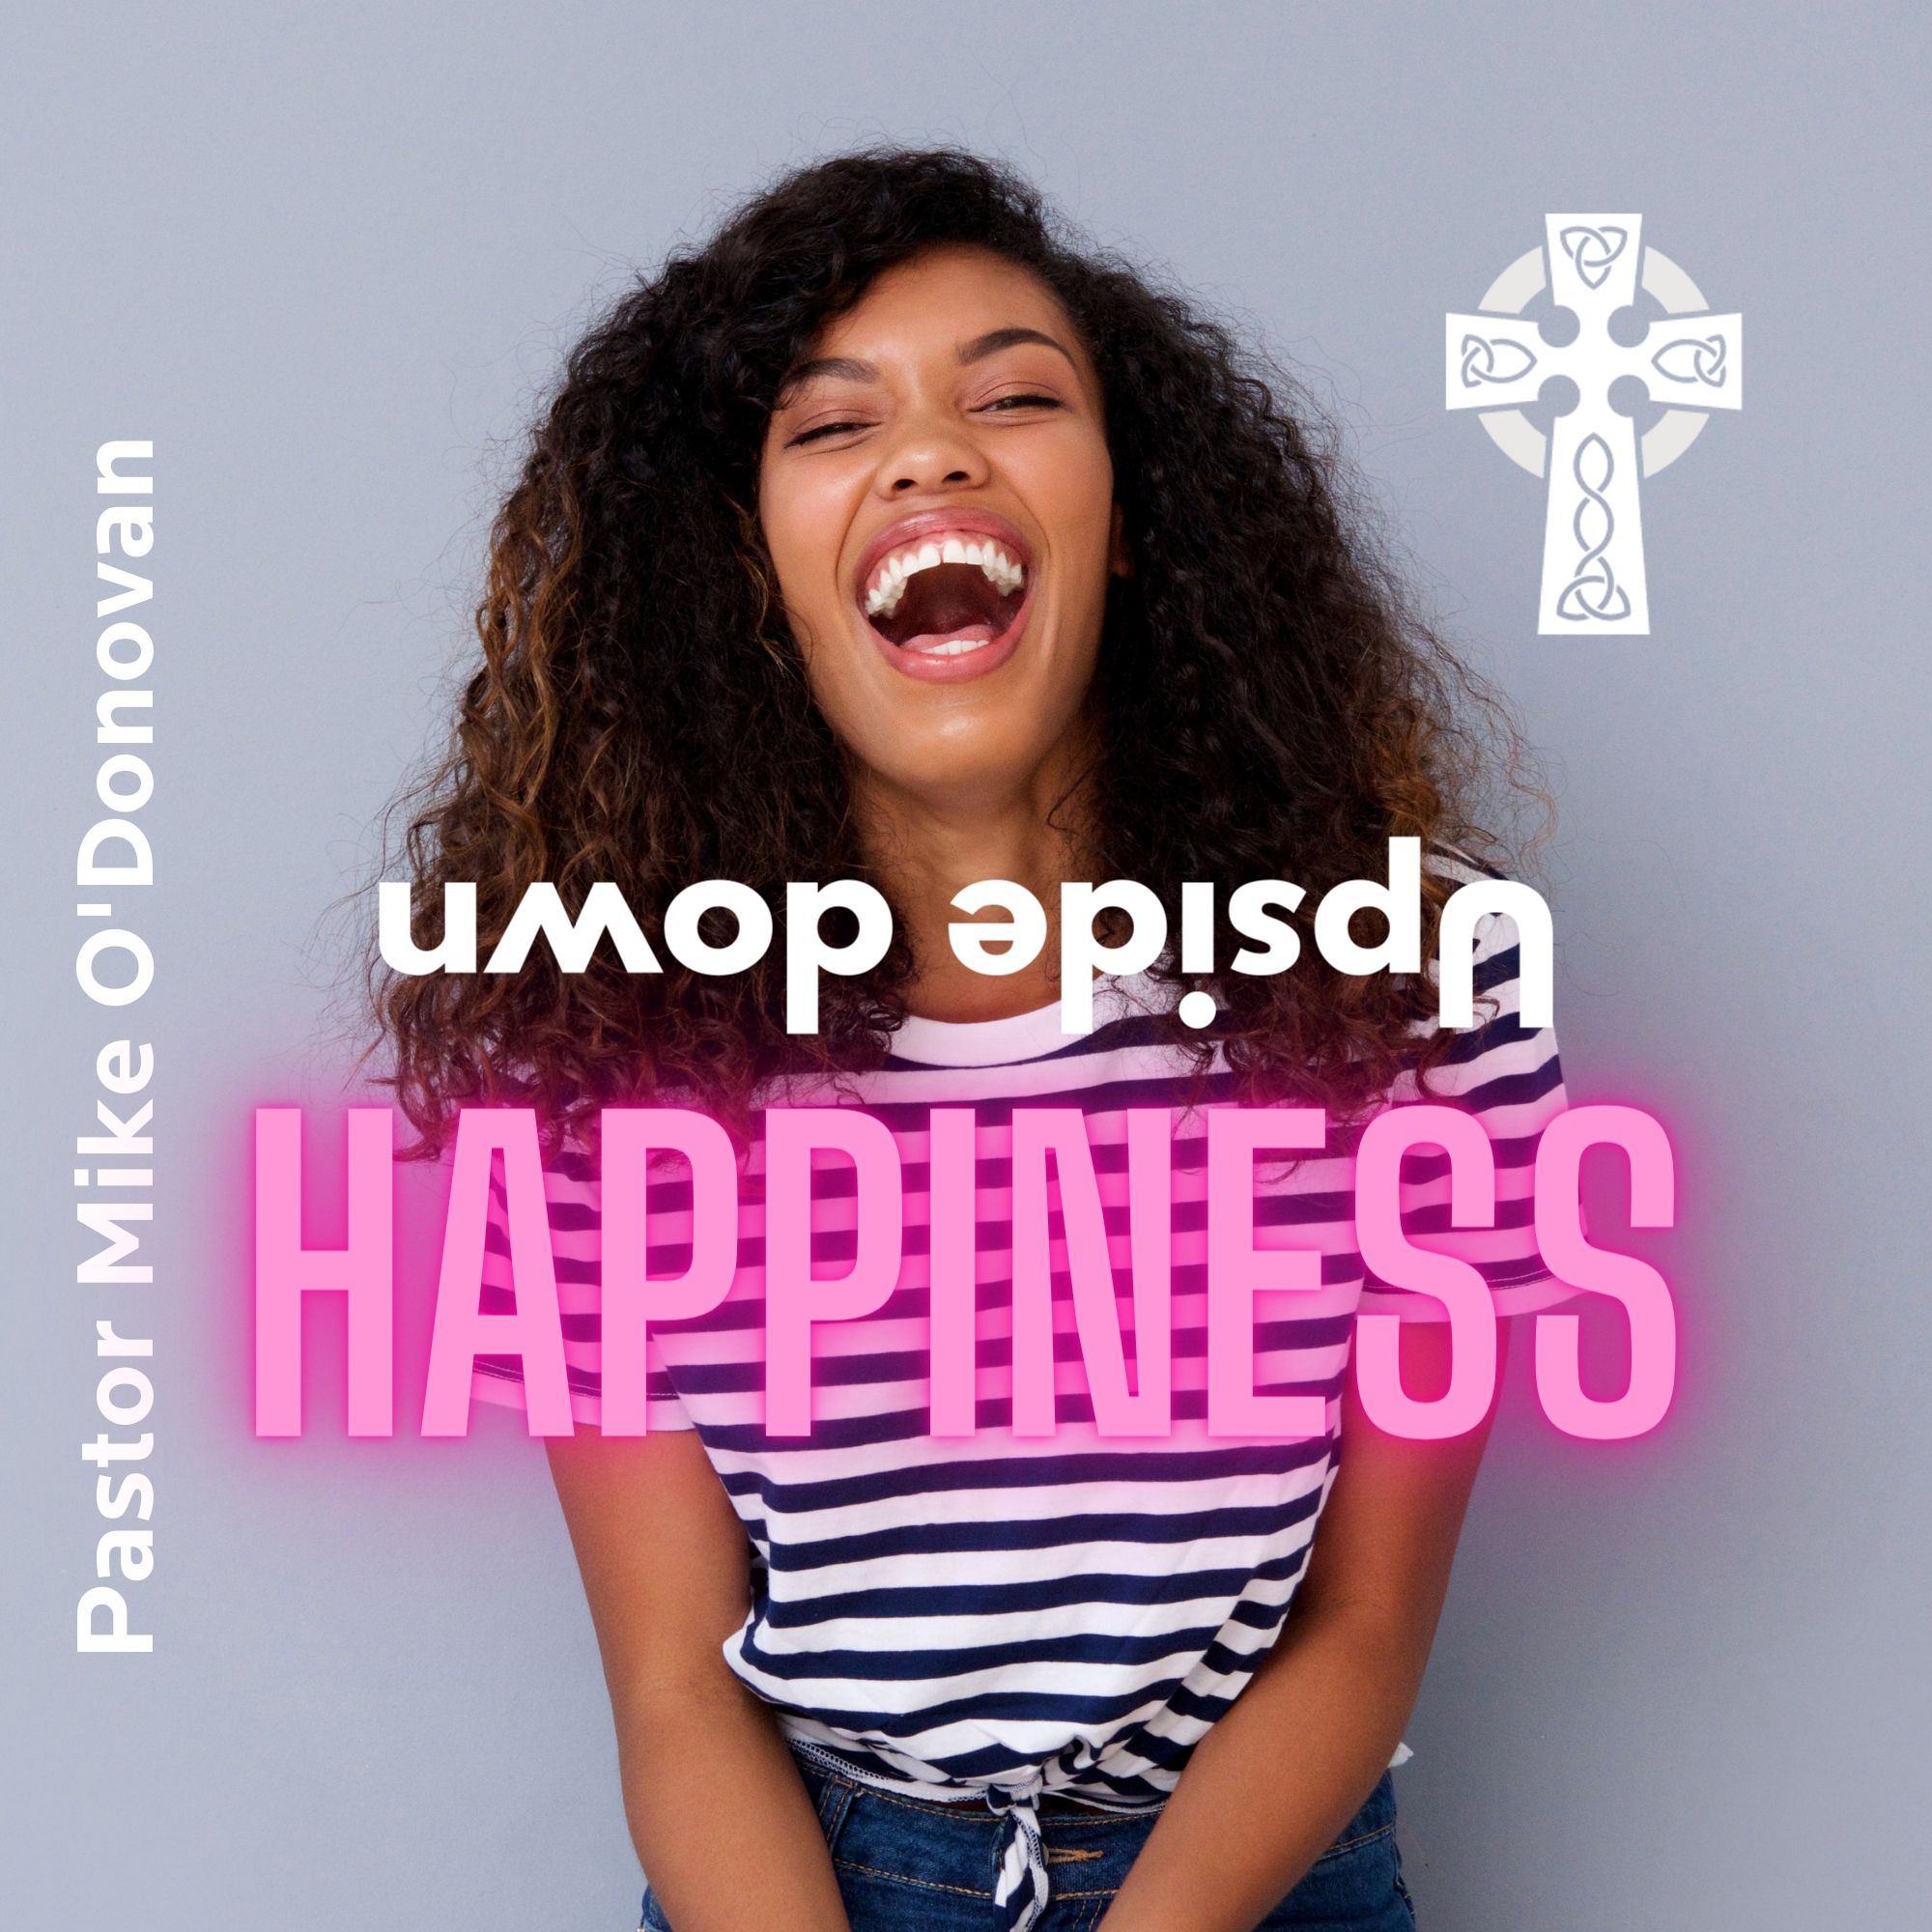 Upside Down Happiness - Pastor Mike O'Donovan